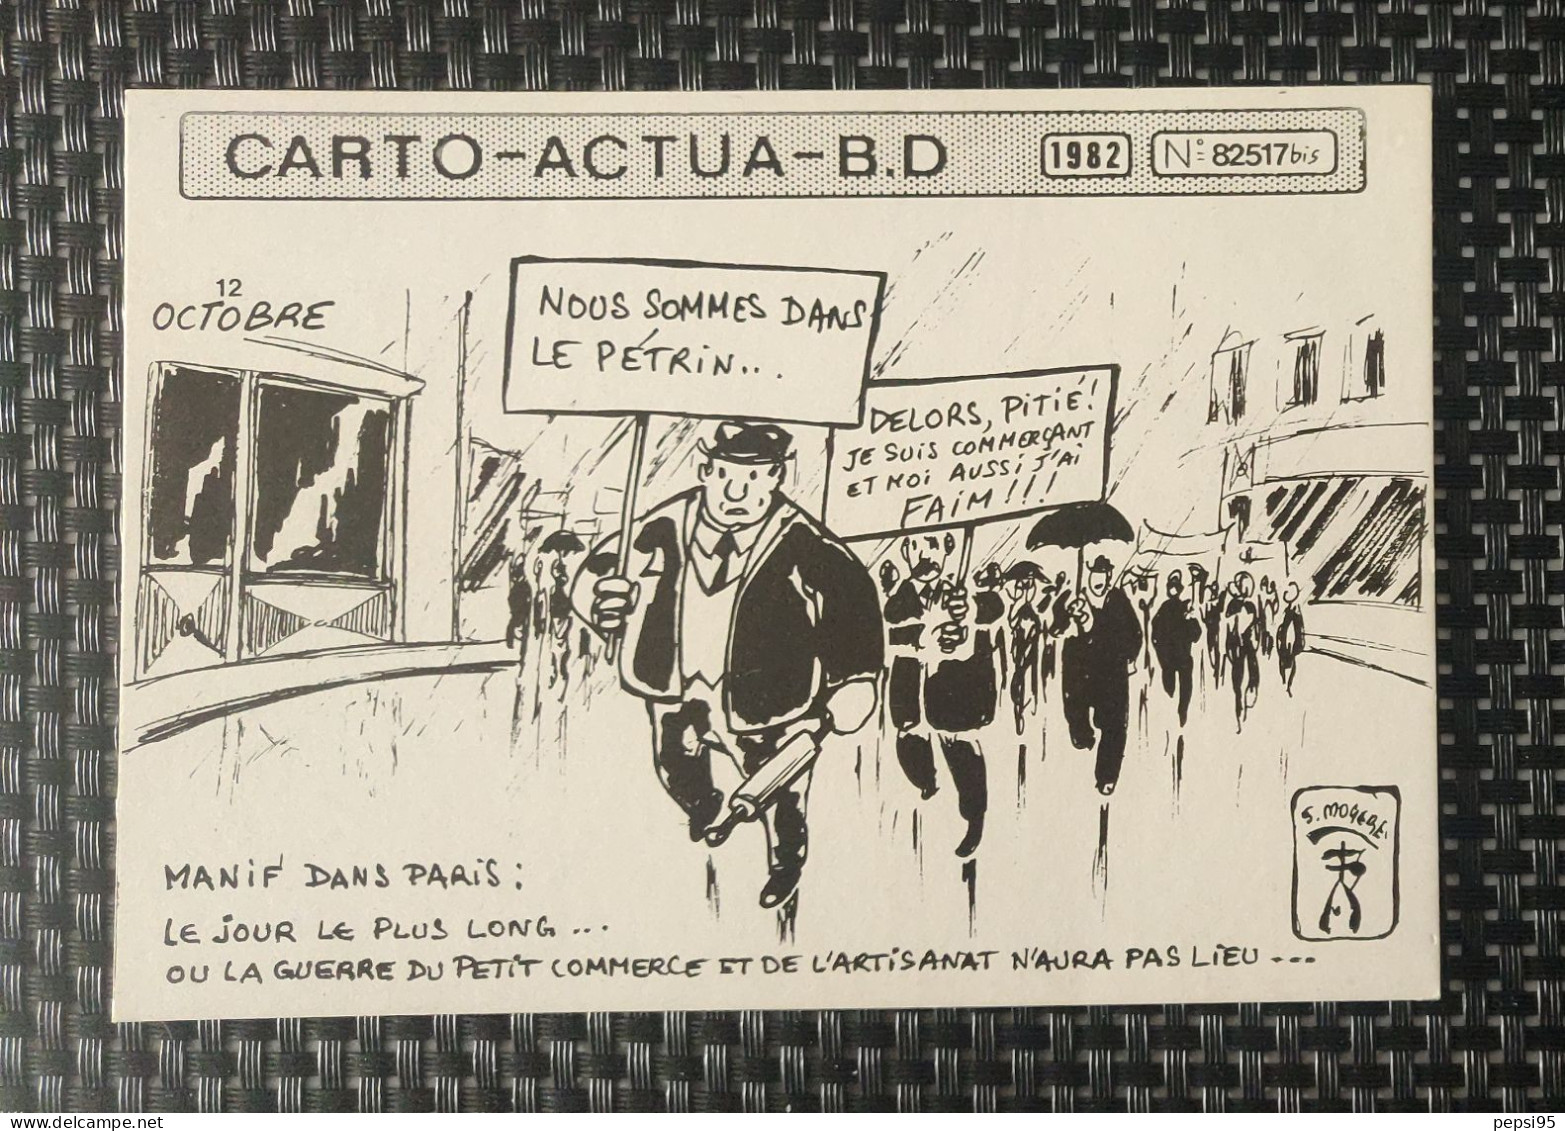 (CPI03) Carte Postale CARTO ACTUA B D N° 82517bis - 1982 - S. MOGERE - Nous Sommes Dans Le Pétrin - Comicfiguren